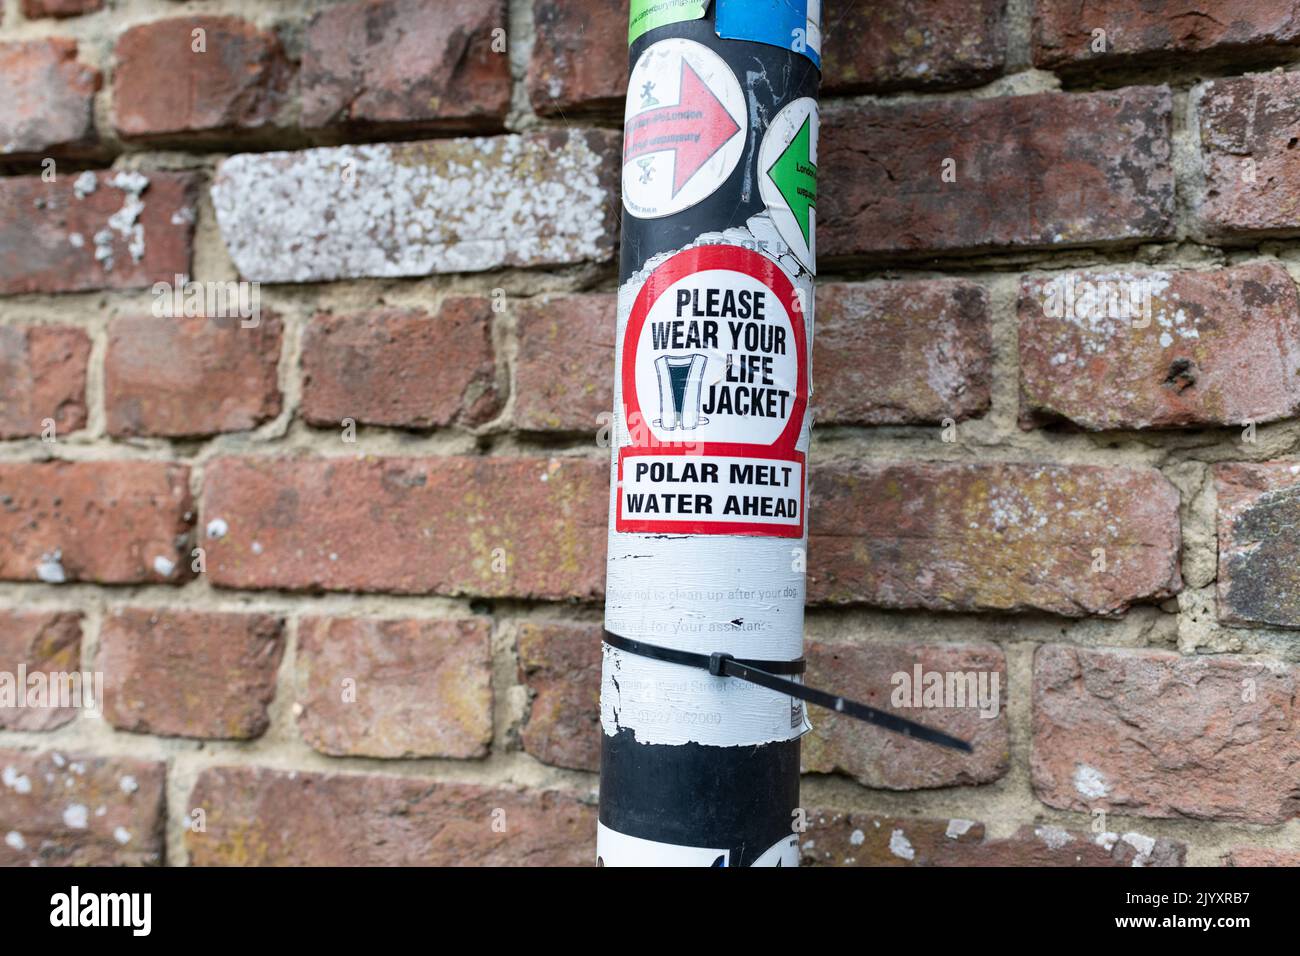 Global Warming Protest Aufkleber - Bitte tragen Sie Ihre Schwimmweste Polar Schmelze Wasser voraus - auf Post, England, Großbritannien Stockfoto